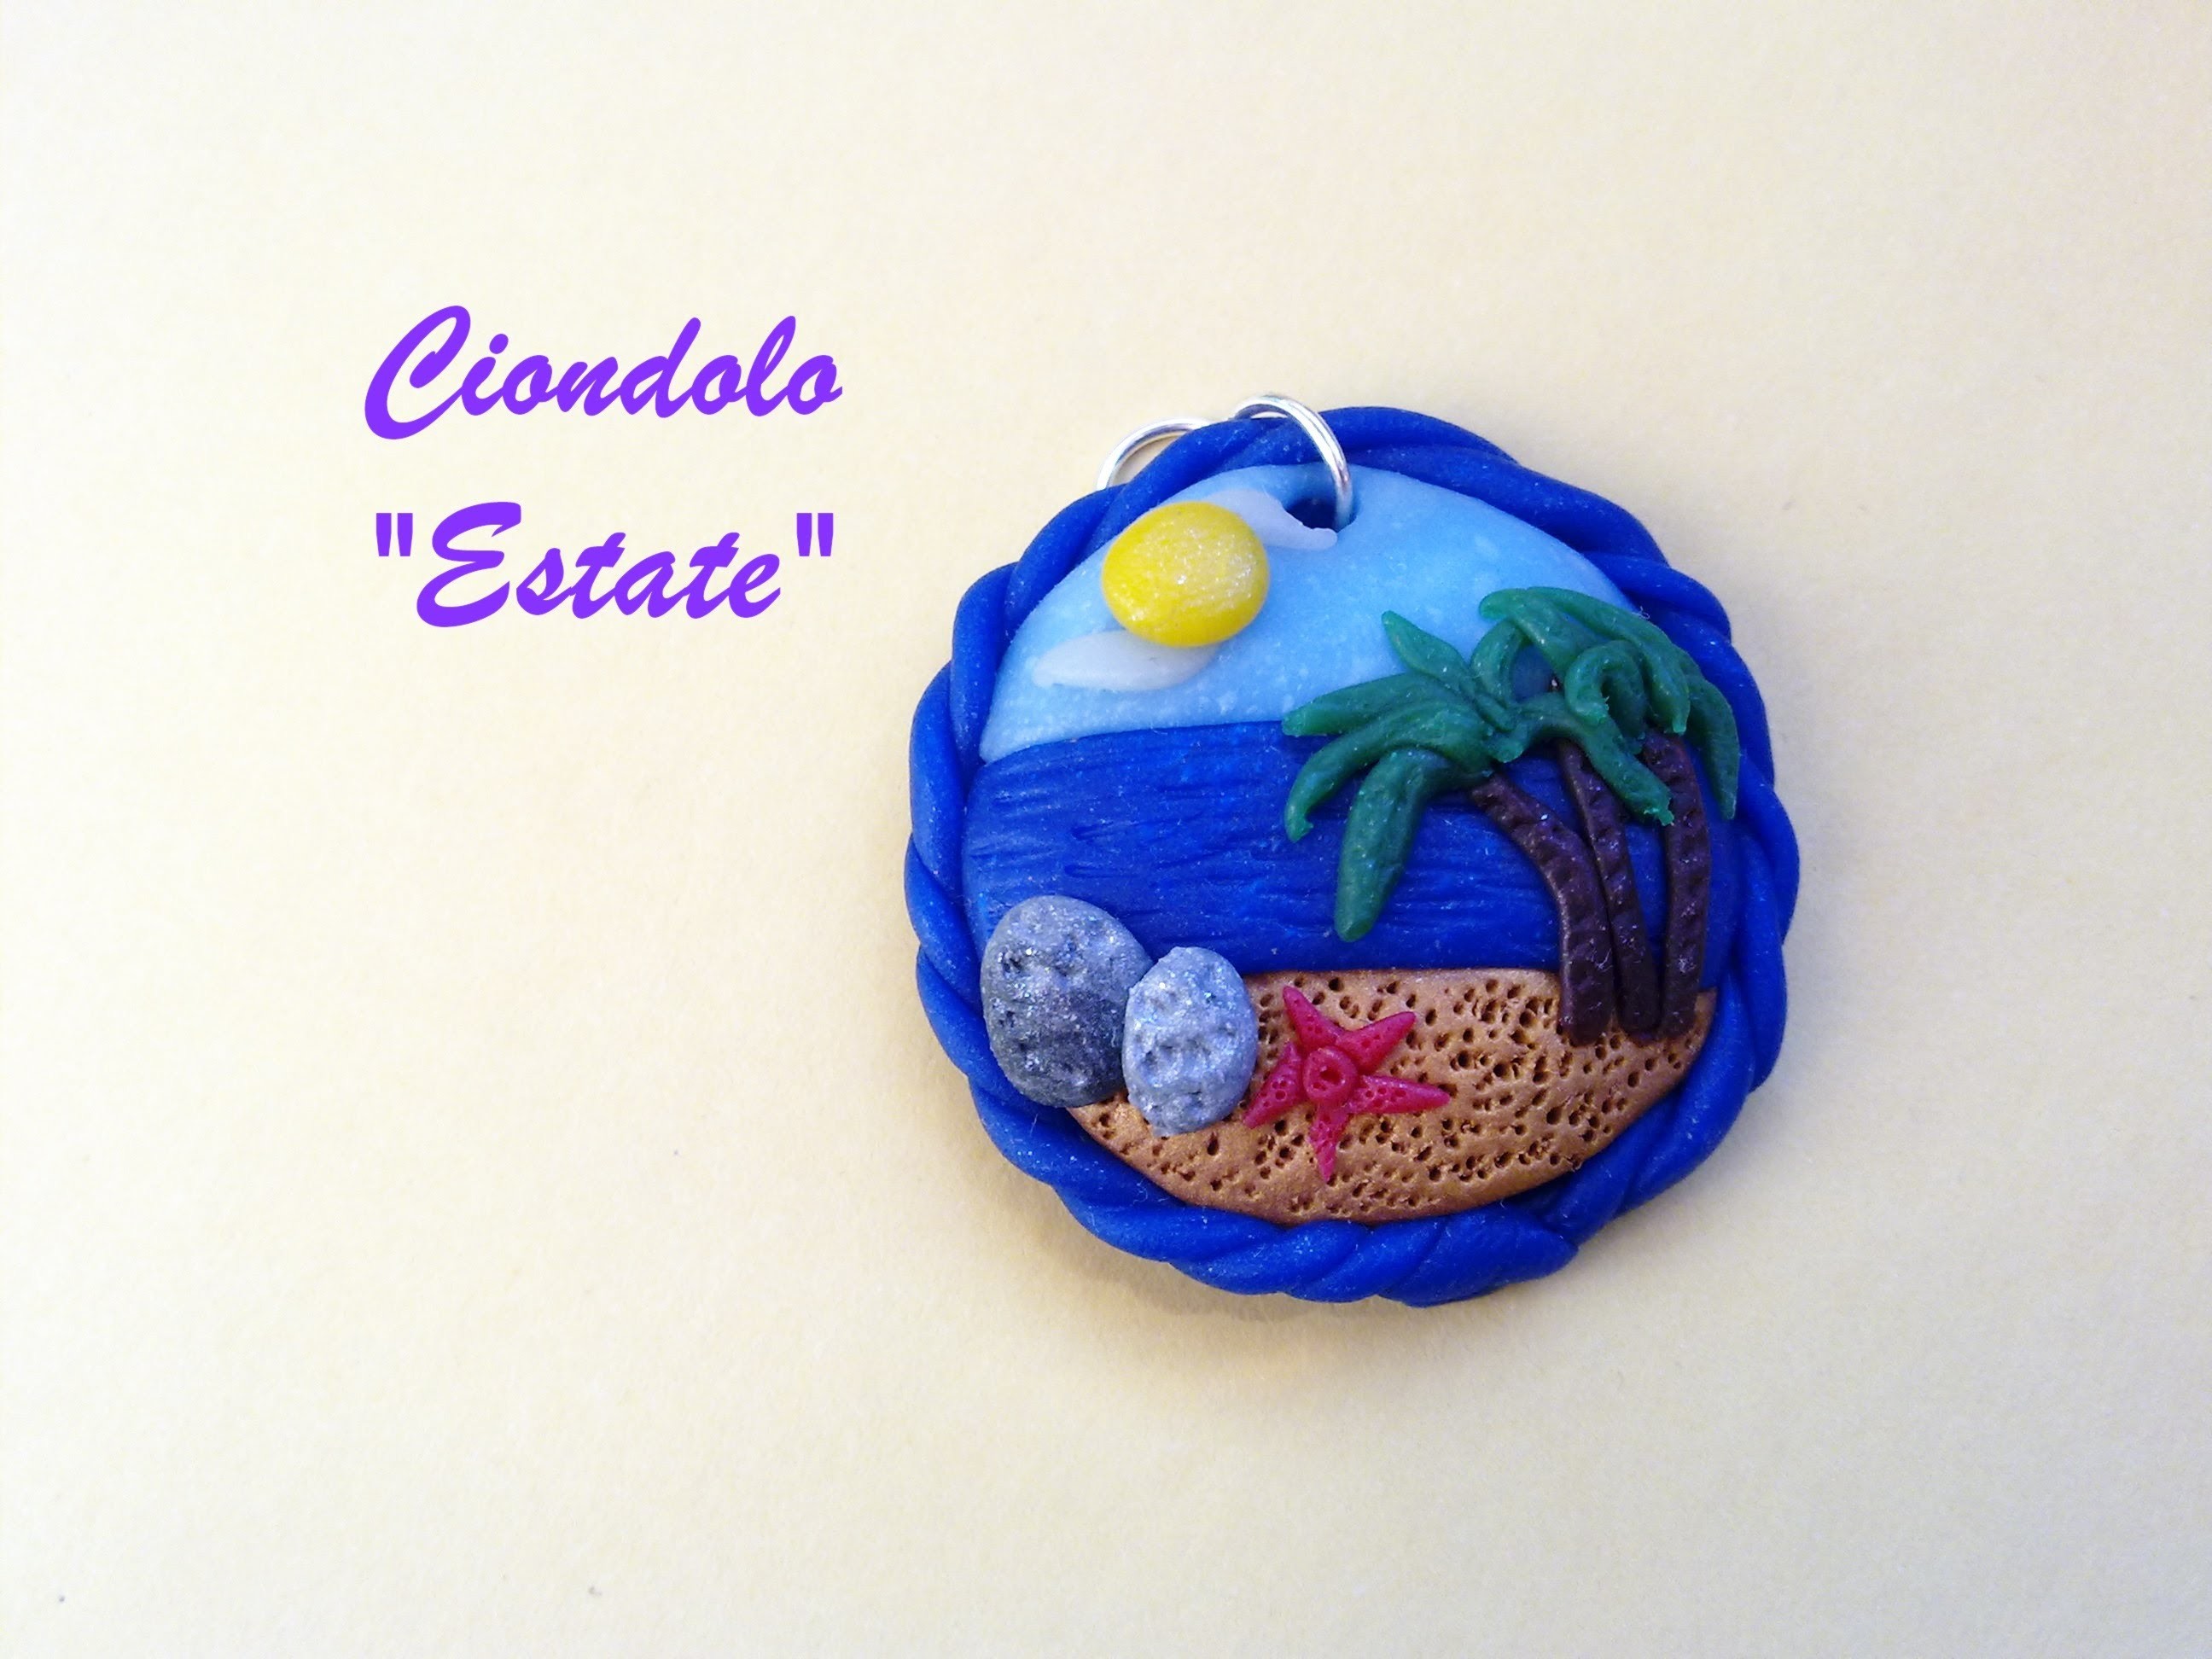 Ciondolo "Estate" ☼ "Summer" Charm (Polymer Clay Tutorial) - Collaborazione con Yletta85